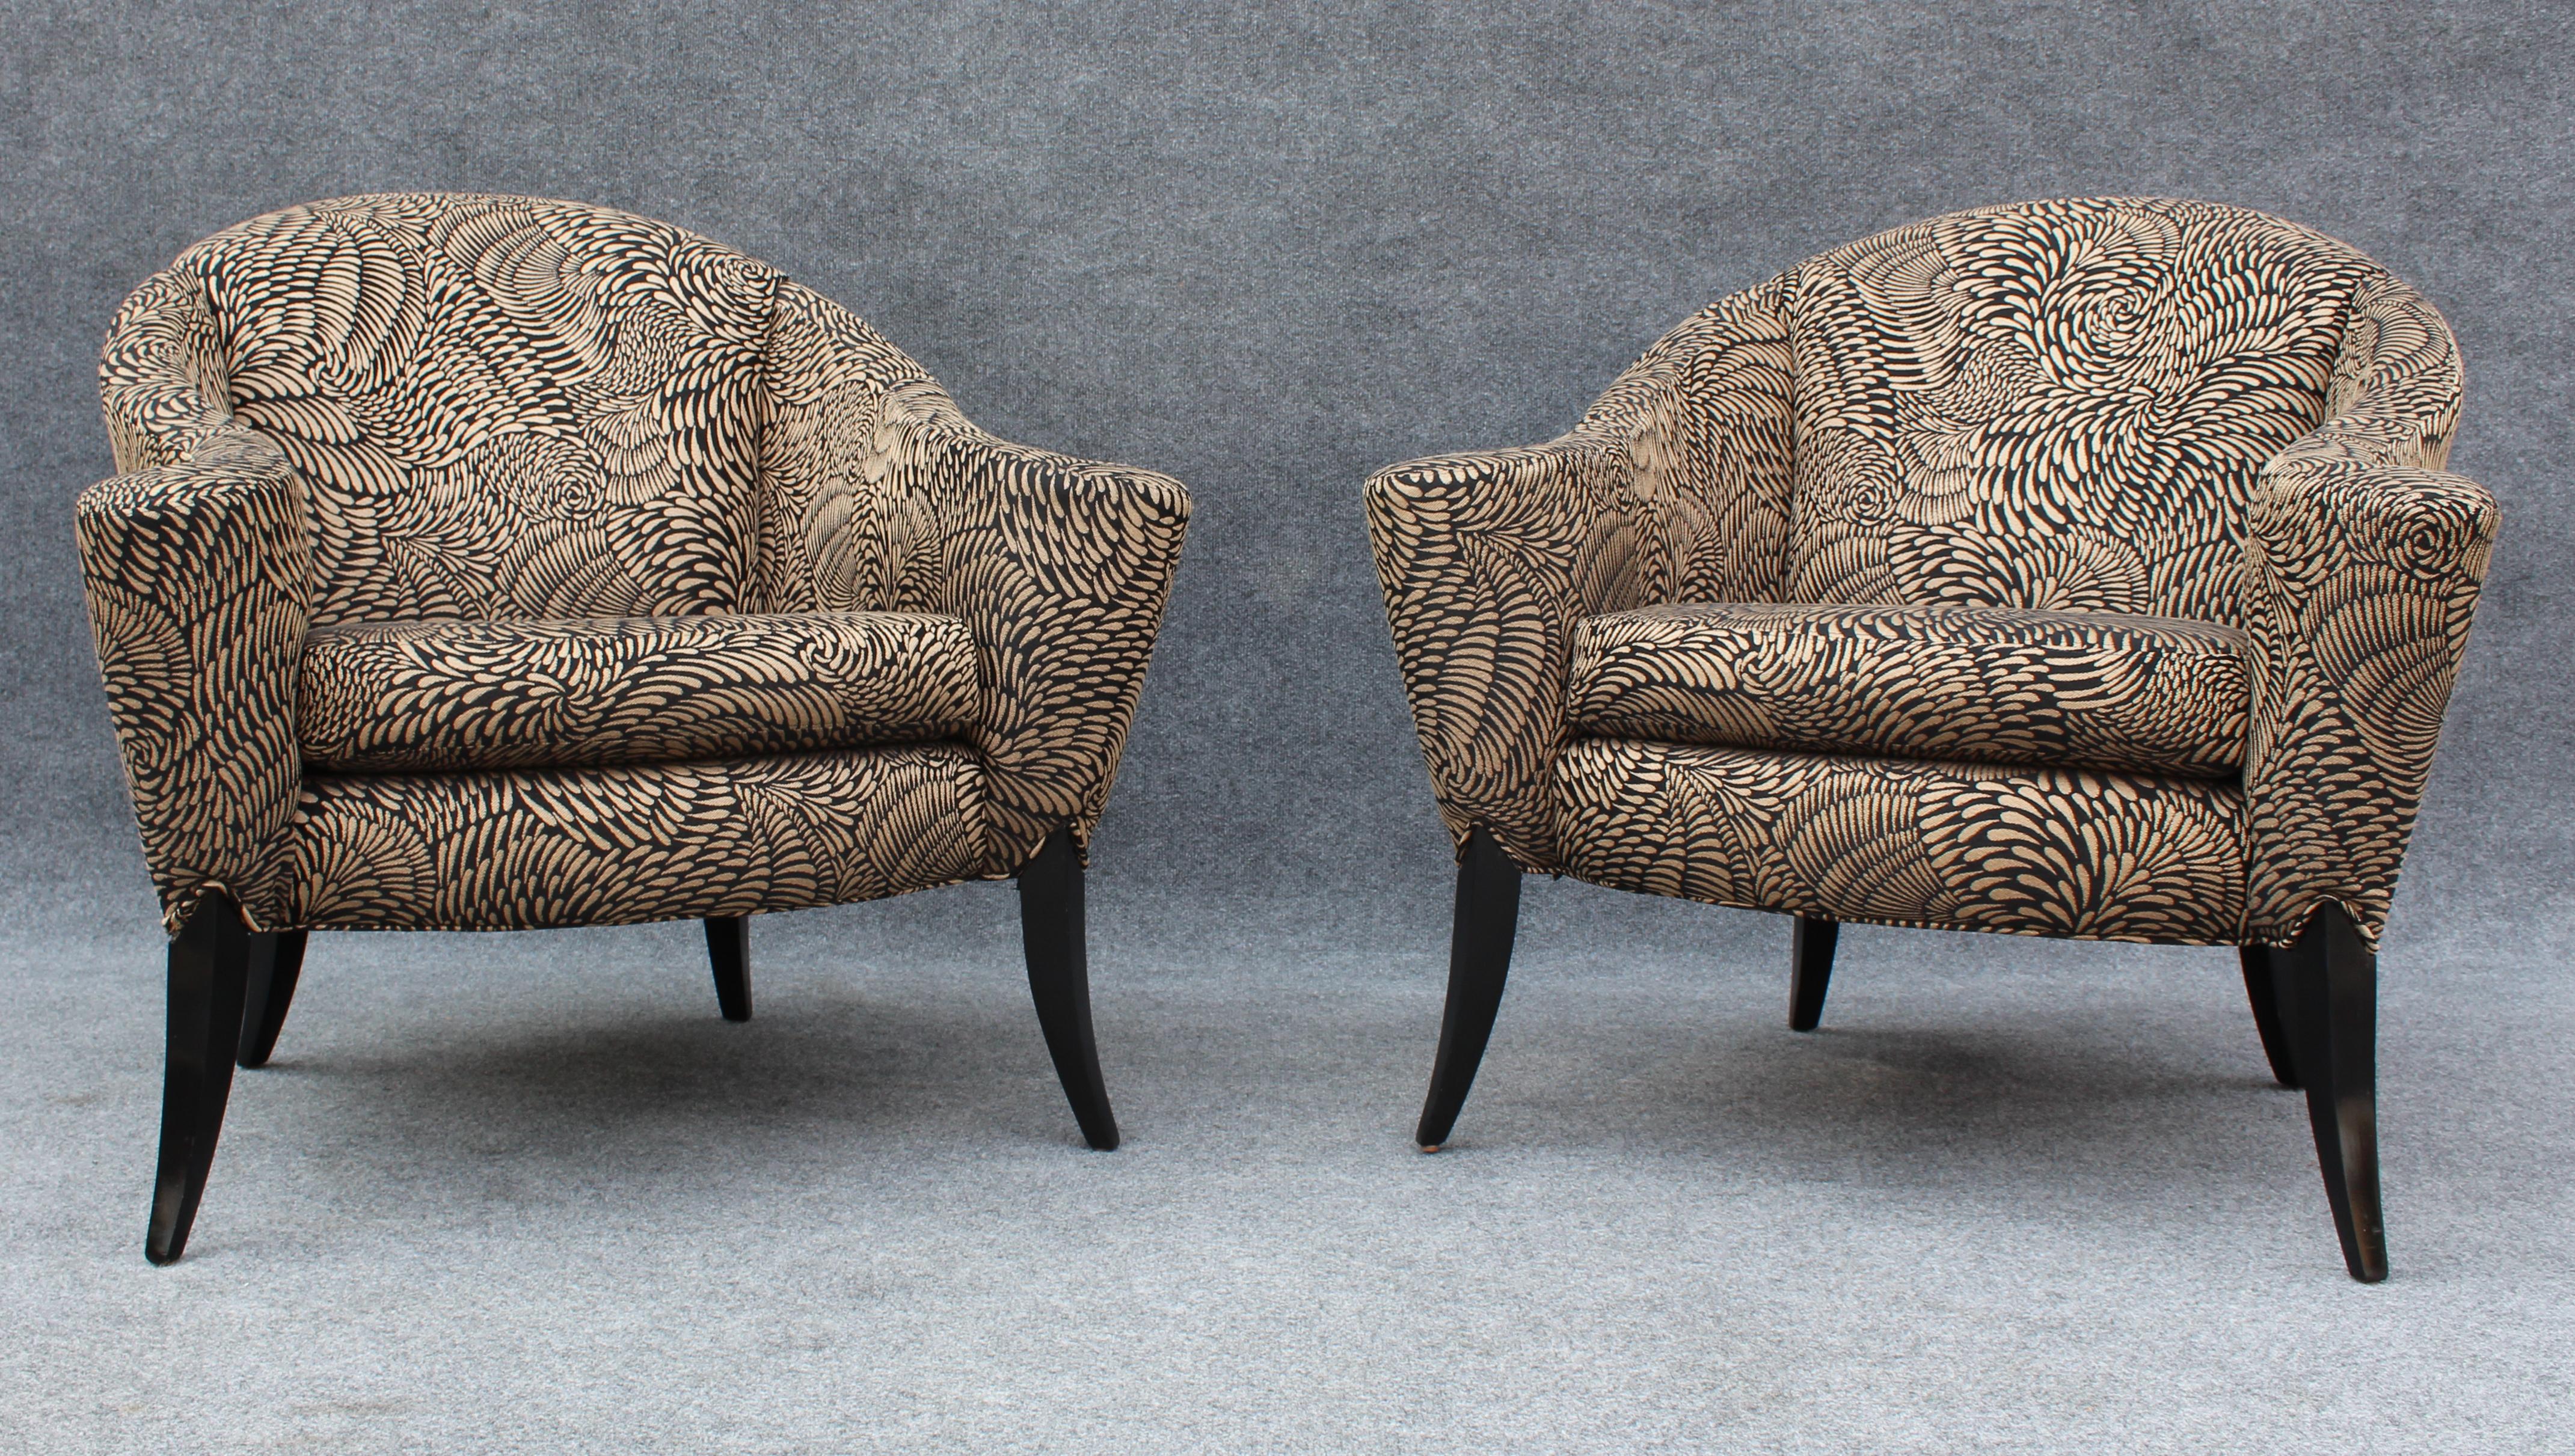 Cette paire de chaises a été conçue par Milo Baughman dans les années 1980 pour la production de Thayer Coggin. Surnommées 